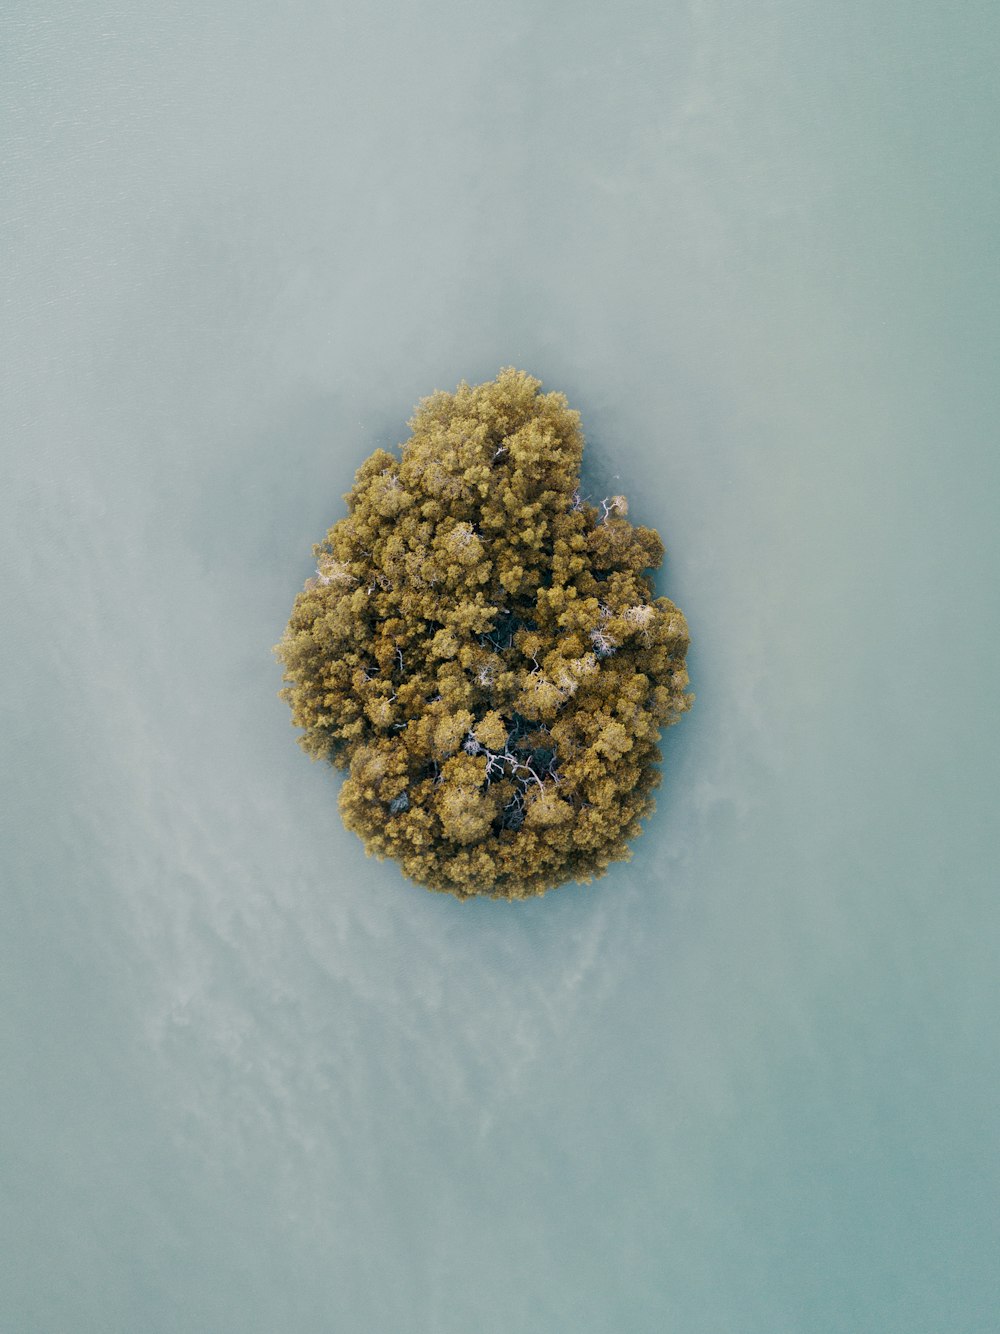 Fotografia aerea di un'isola